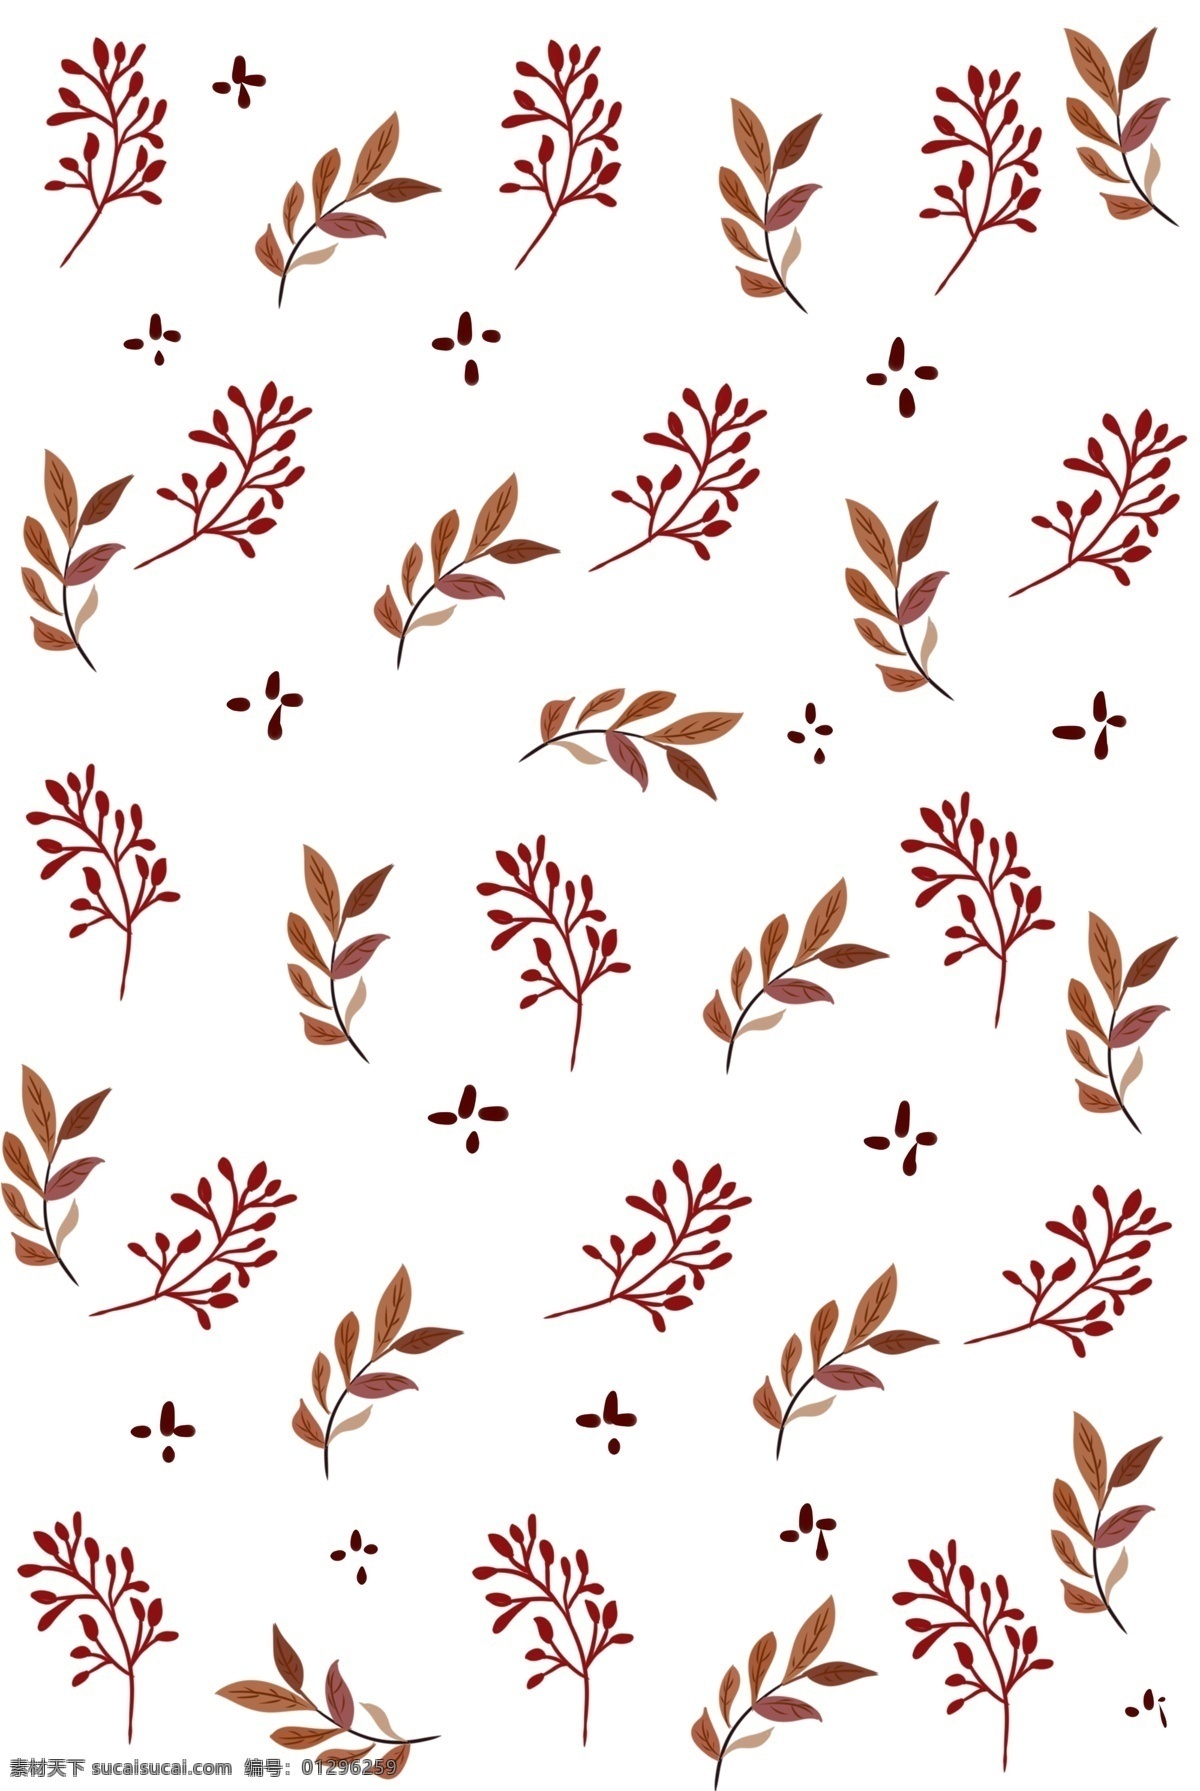 红色 叶子 枝条 底纹 手绘底纹 植物底纹 大自然 植物 树叶底纹 树枝底纹装饰